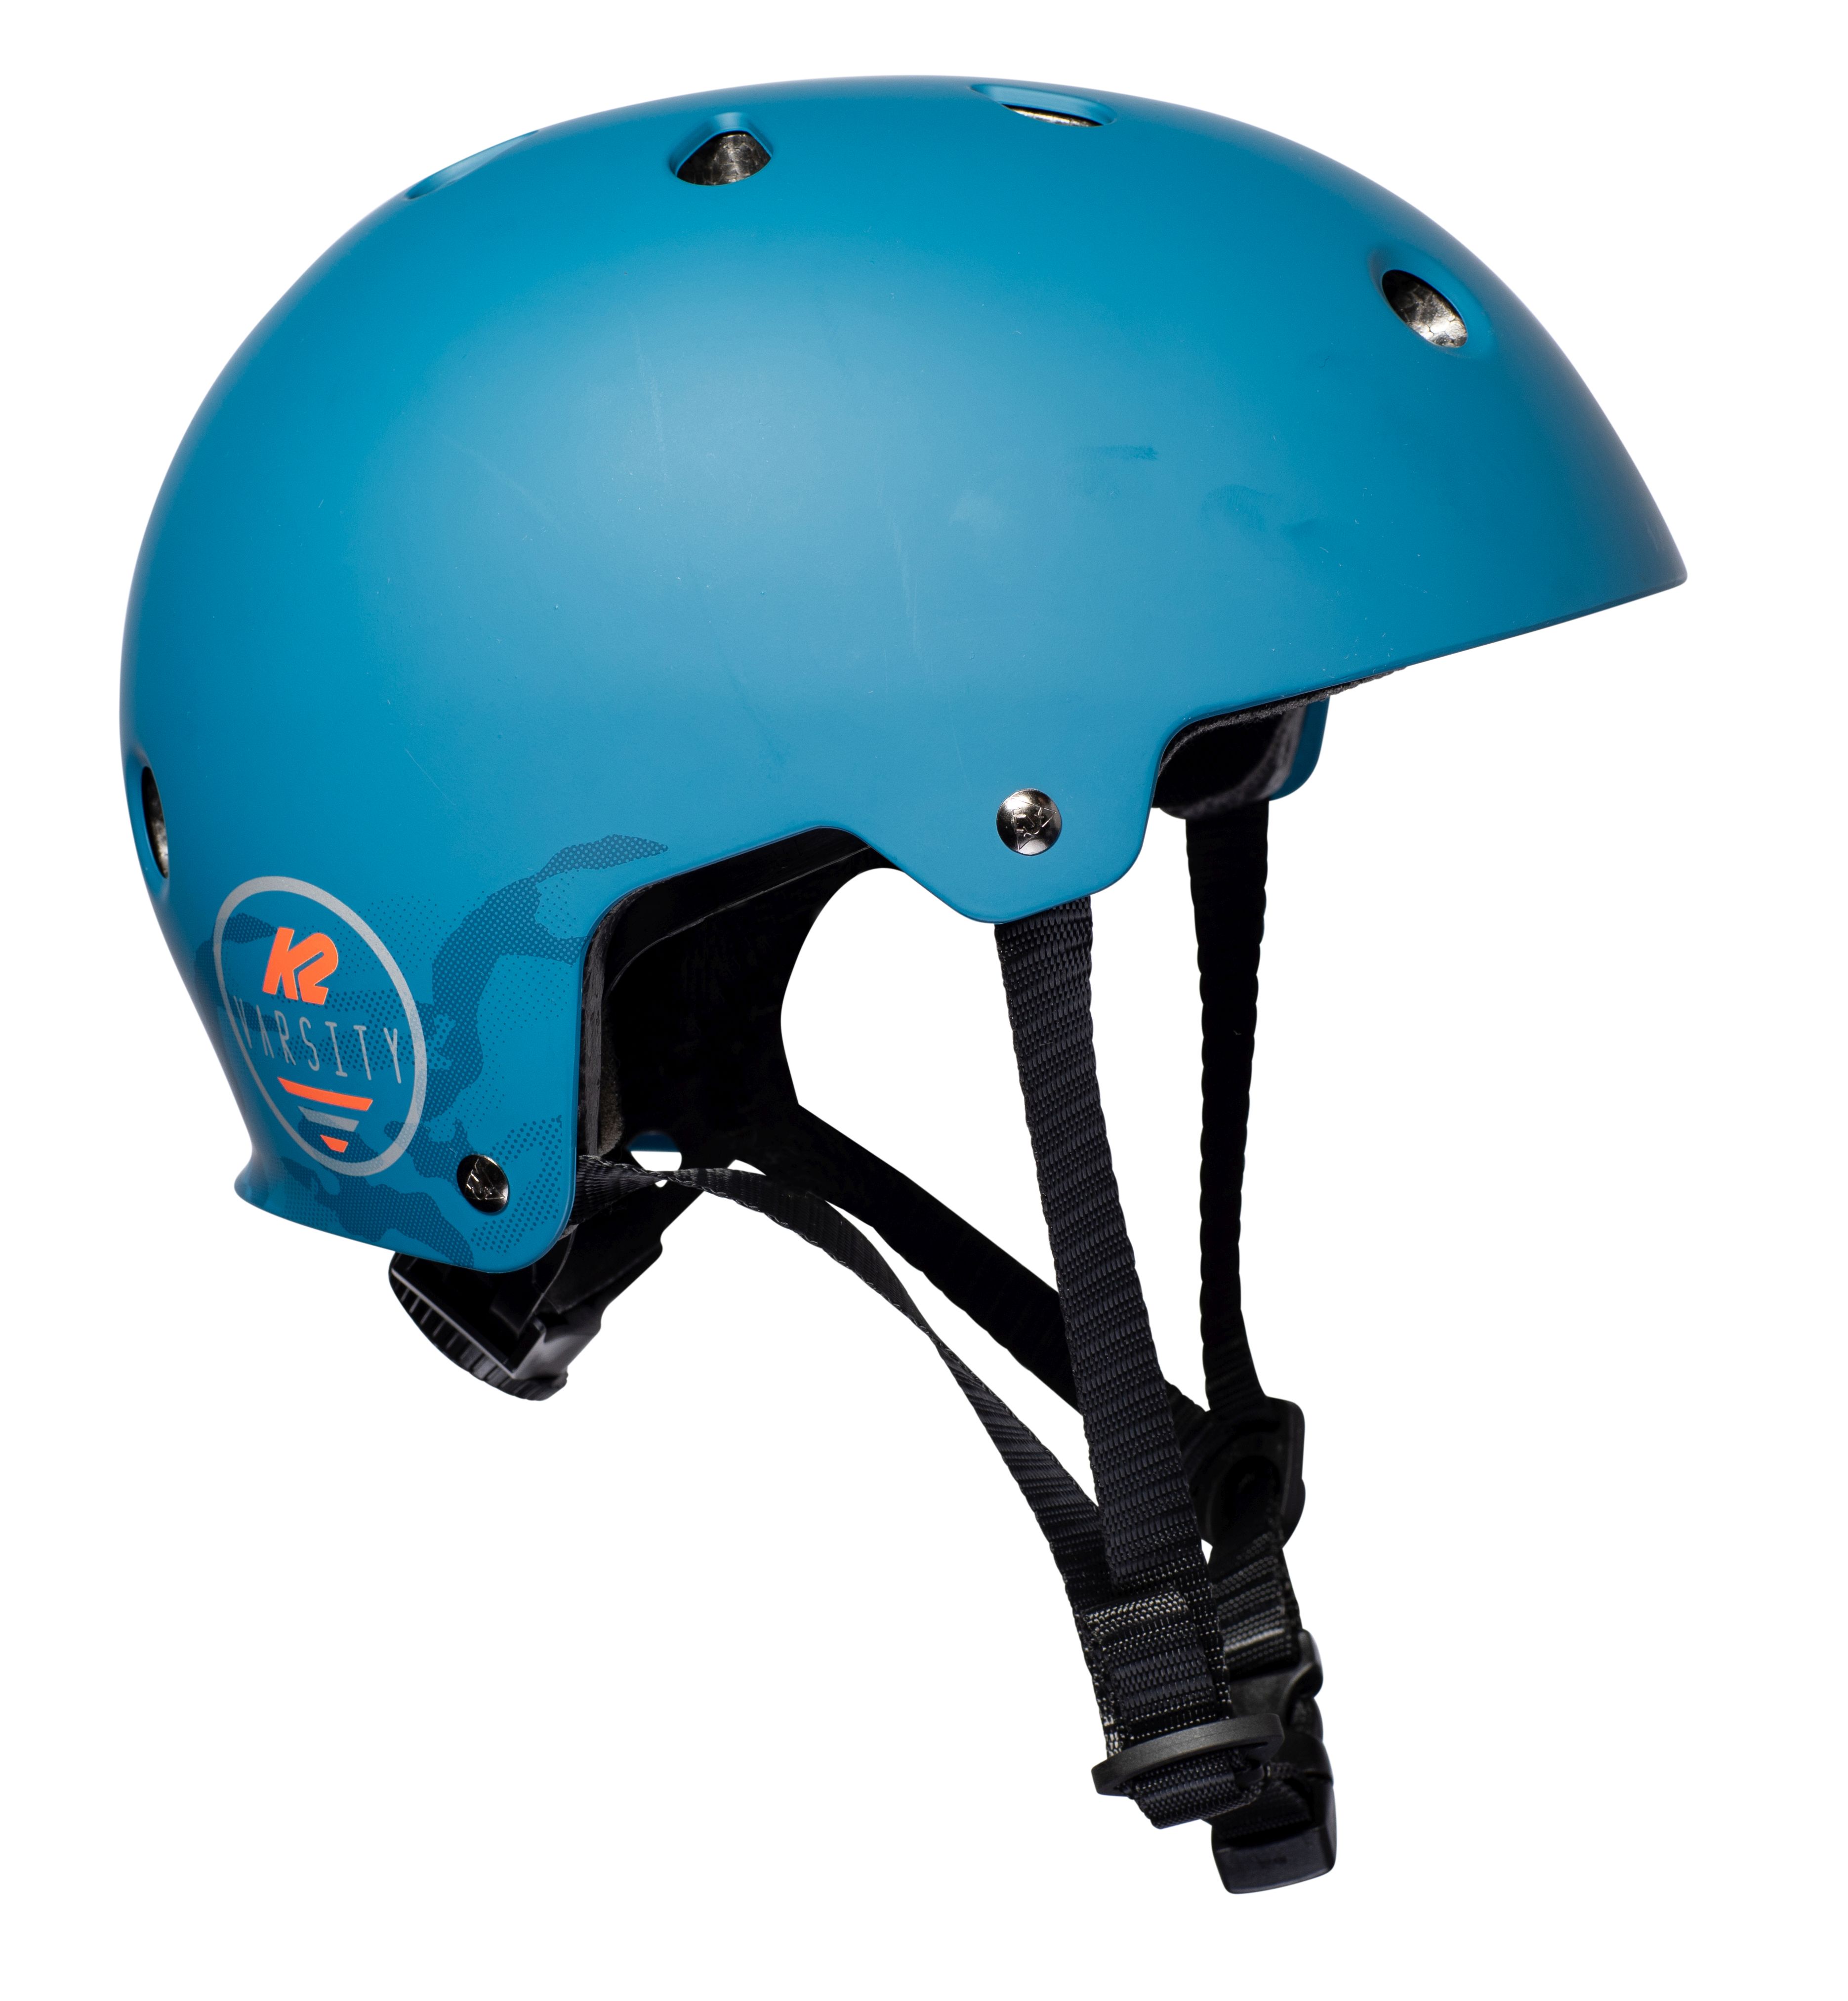 K2 helma Varsity modrá